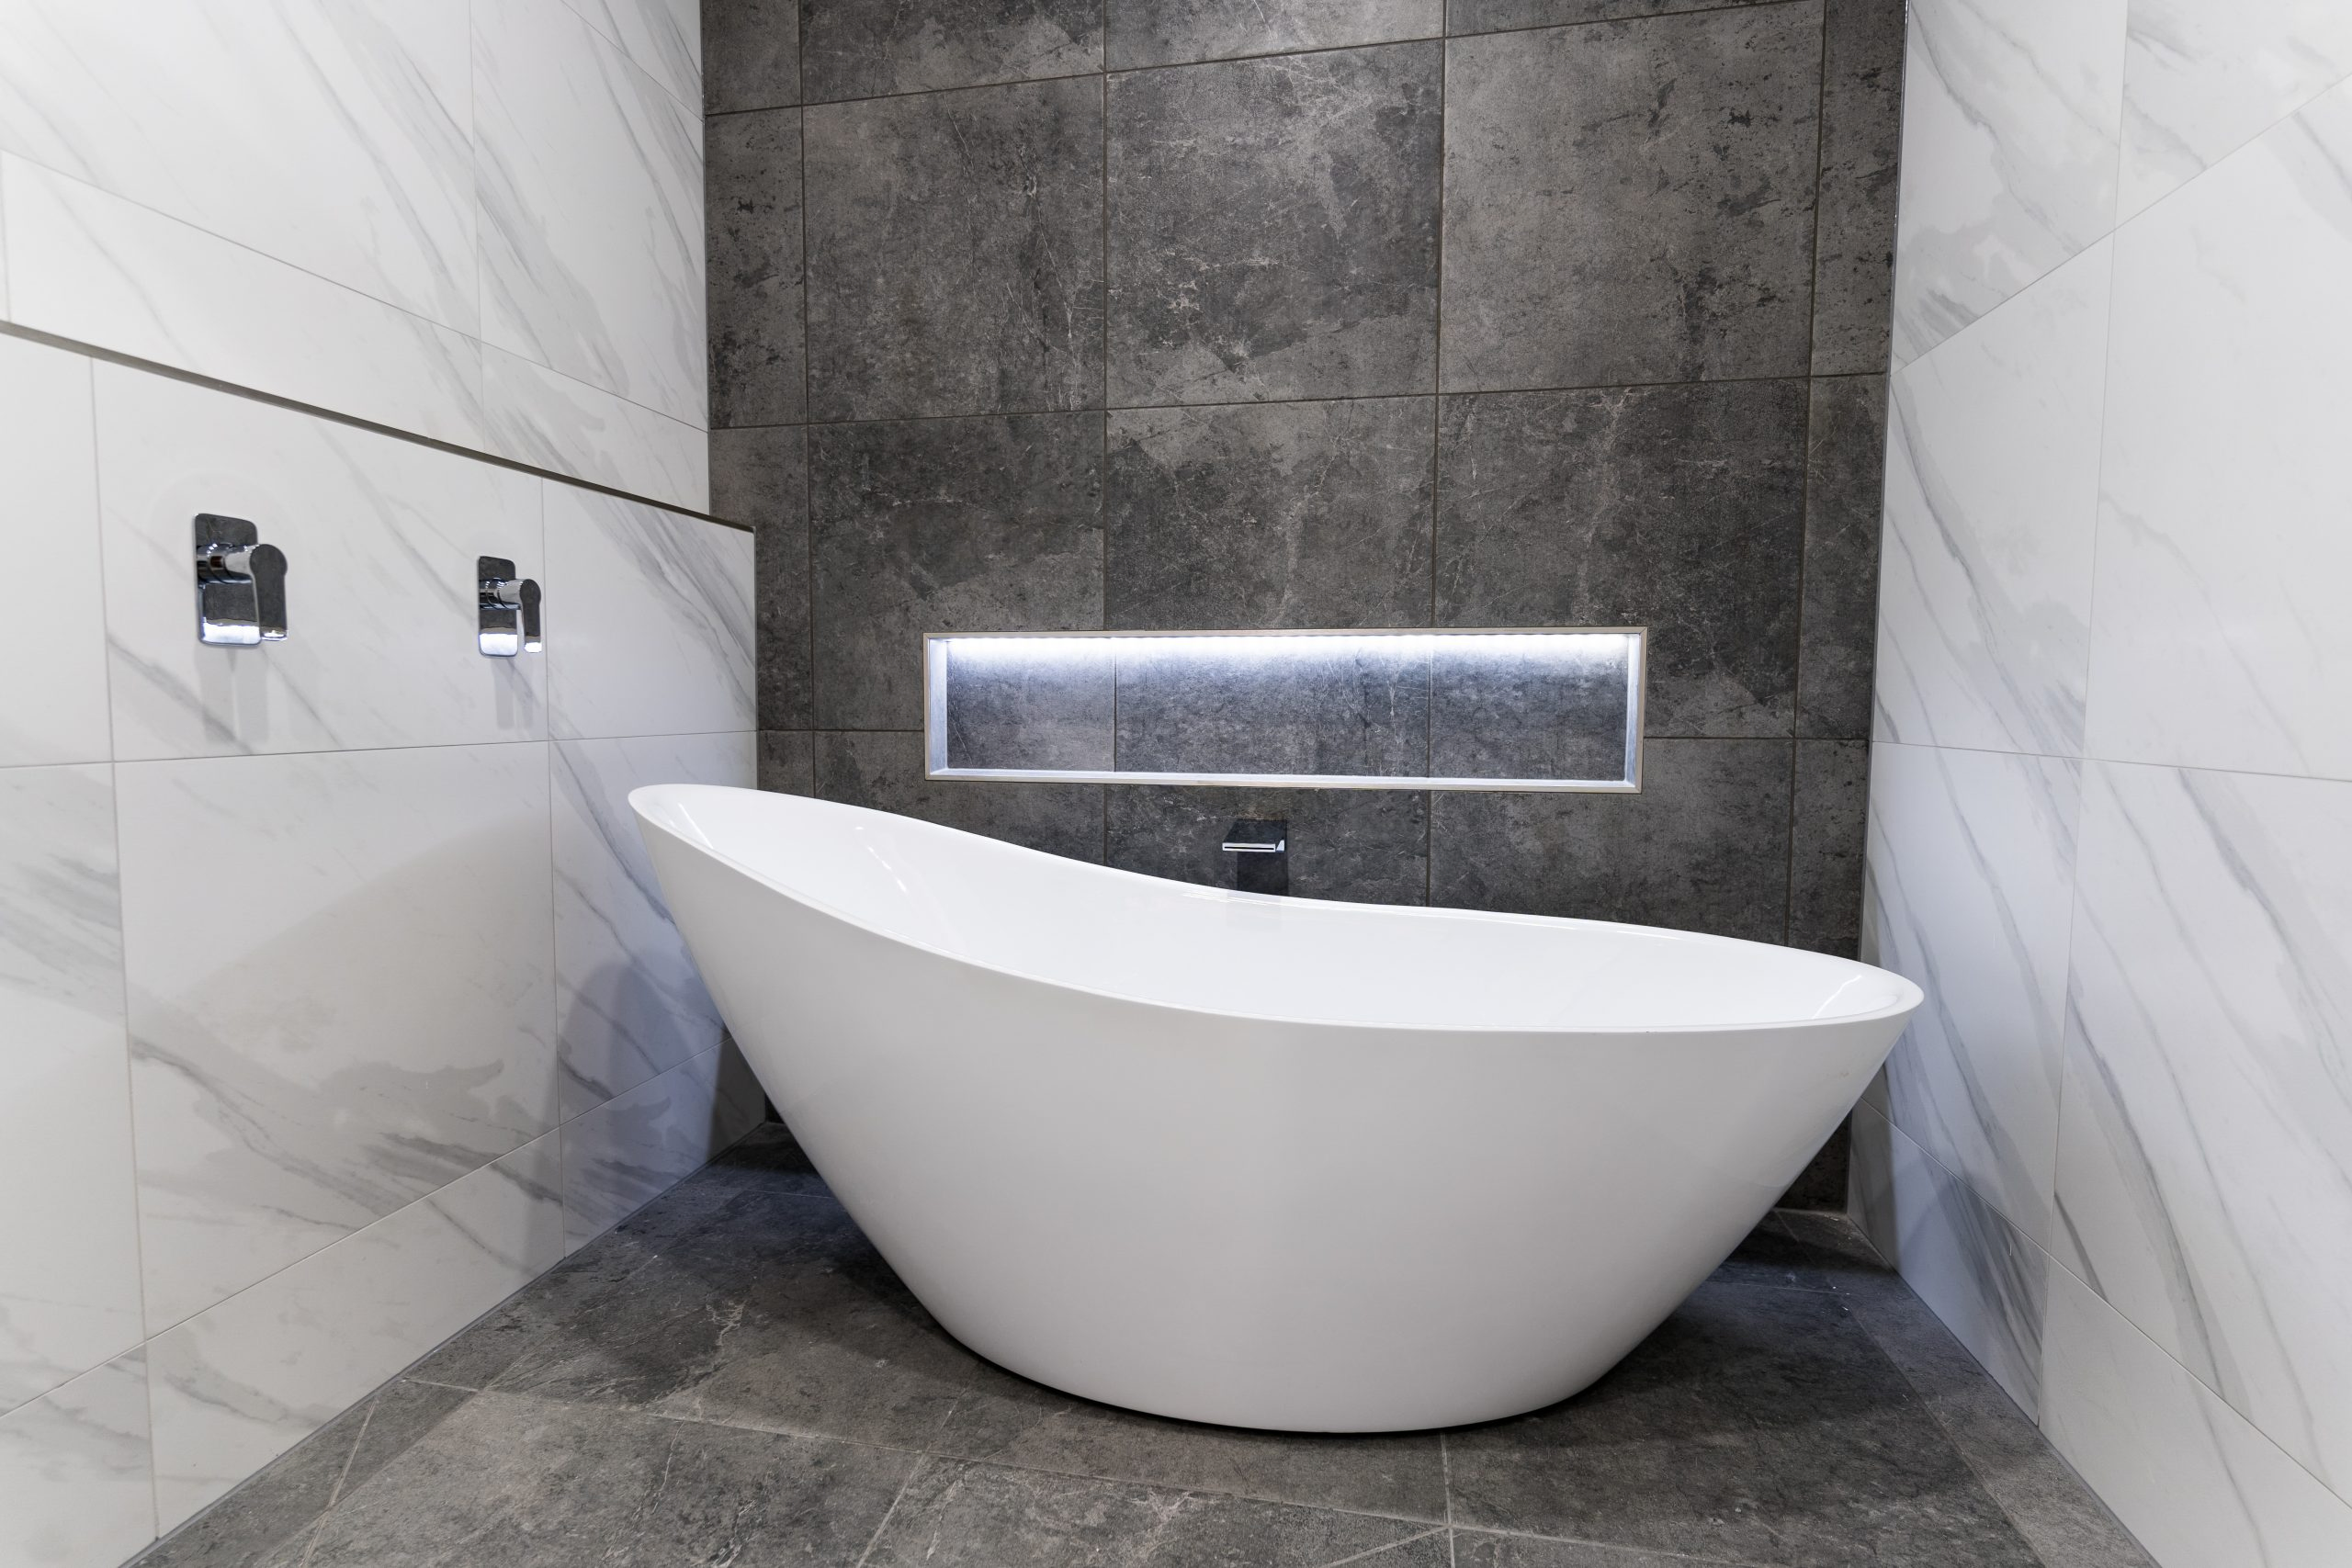 uniquely shaped bath in a modern bathroom with a wall niche